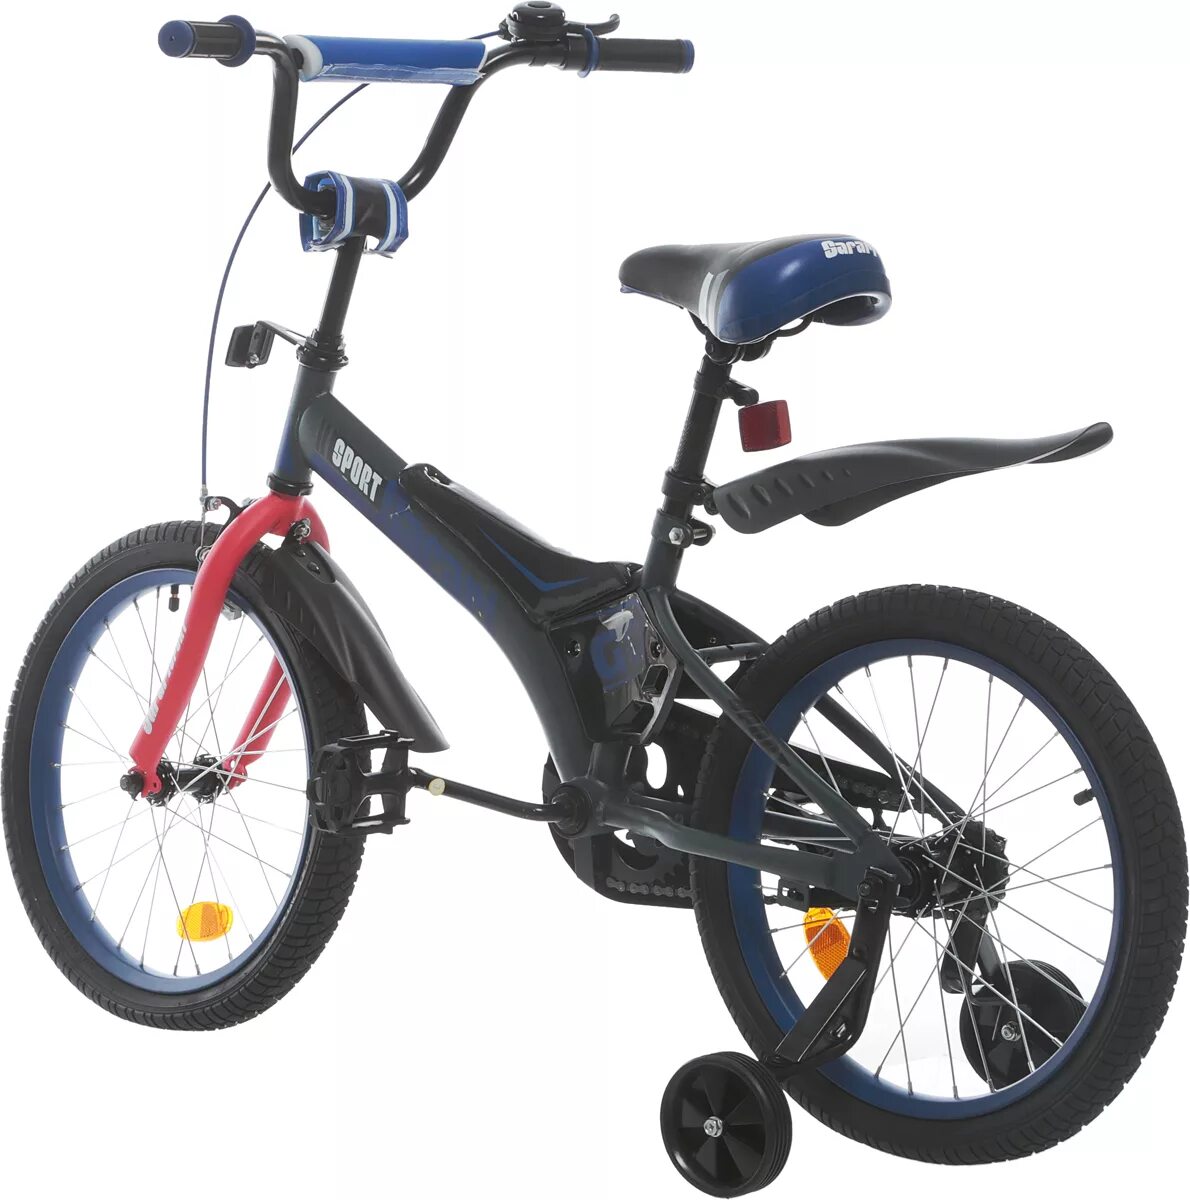 Детское велик цена. Велосипед 14 gt9237 Safari Proff Geometry. Velo2 / велосипед двухколесный (Sportpower Gro 558). Safari Sport велосипед детский. Велосипед Safari Proff 18.